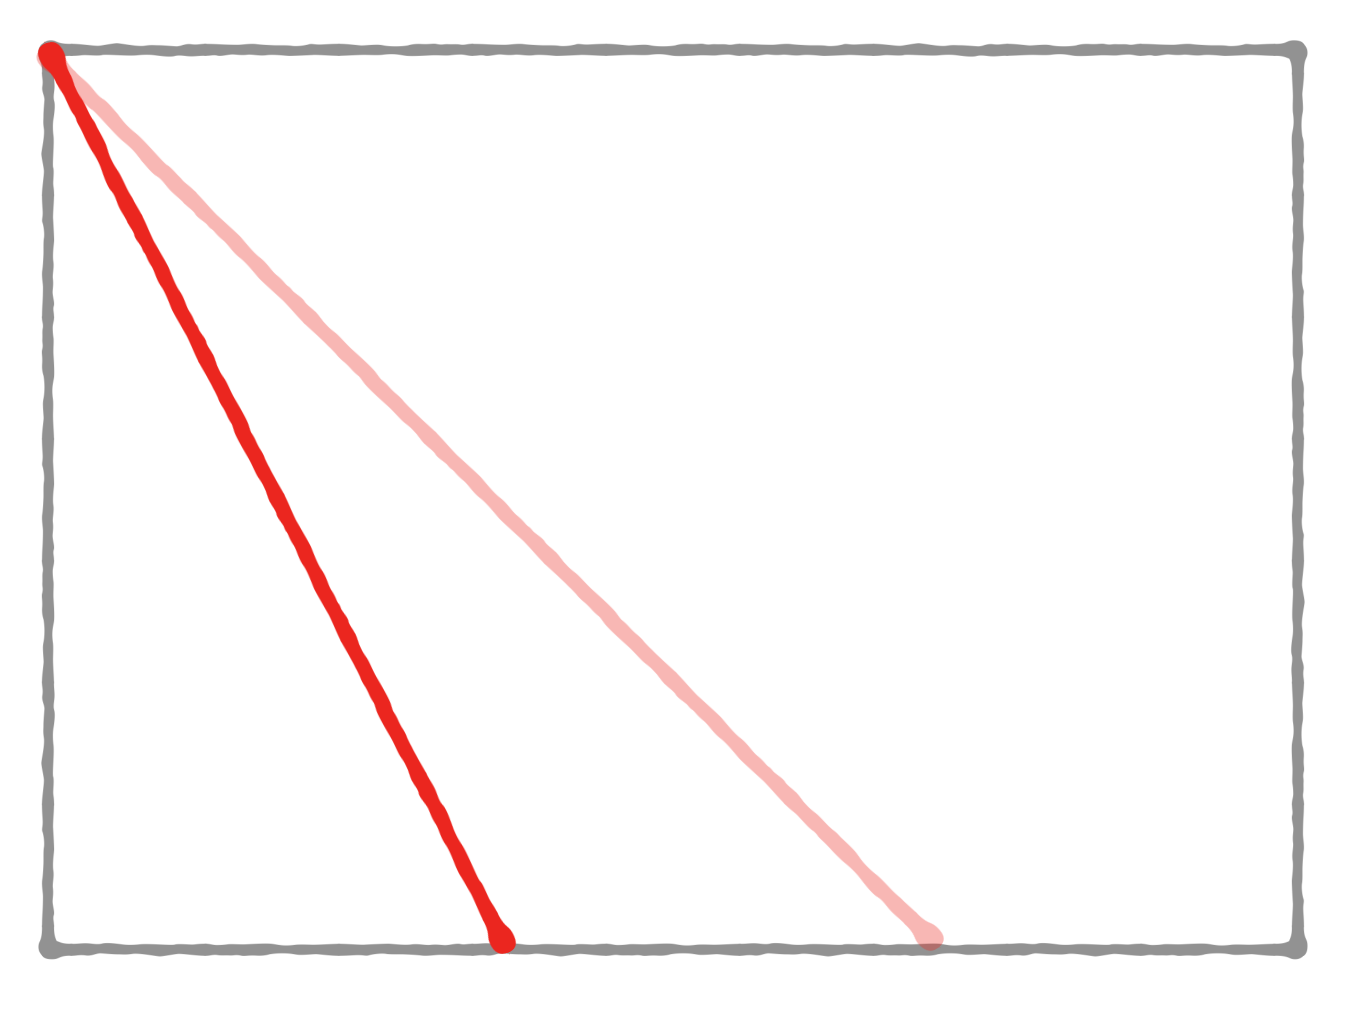 自作単管パイプ階段設計図、斜辺長さ計算ミス